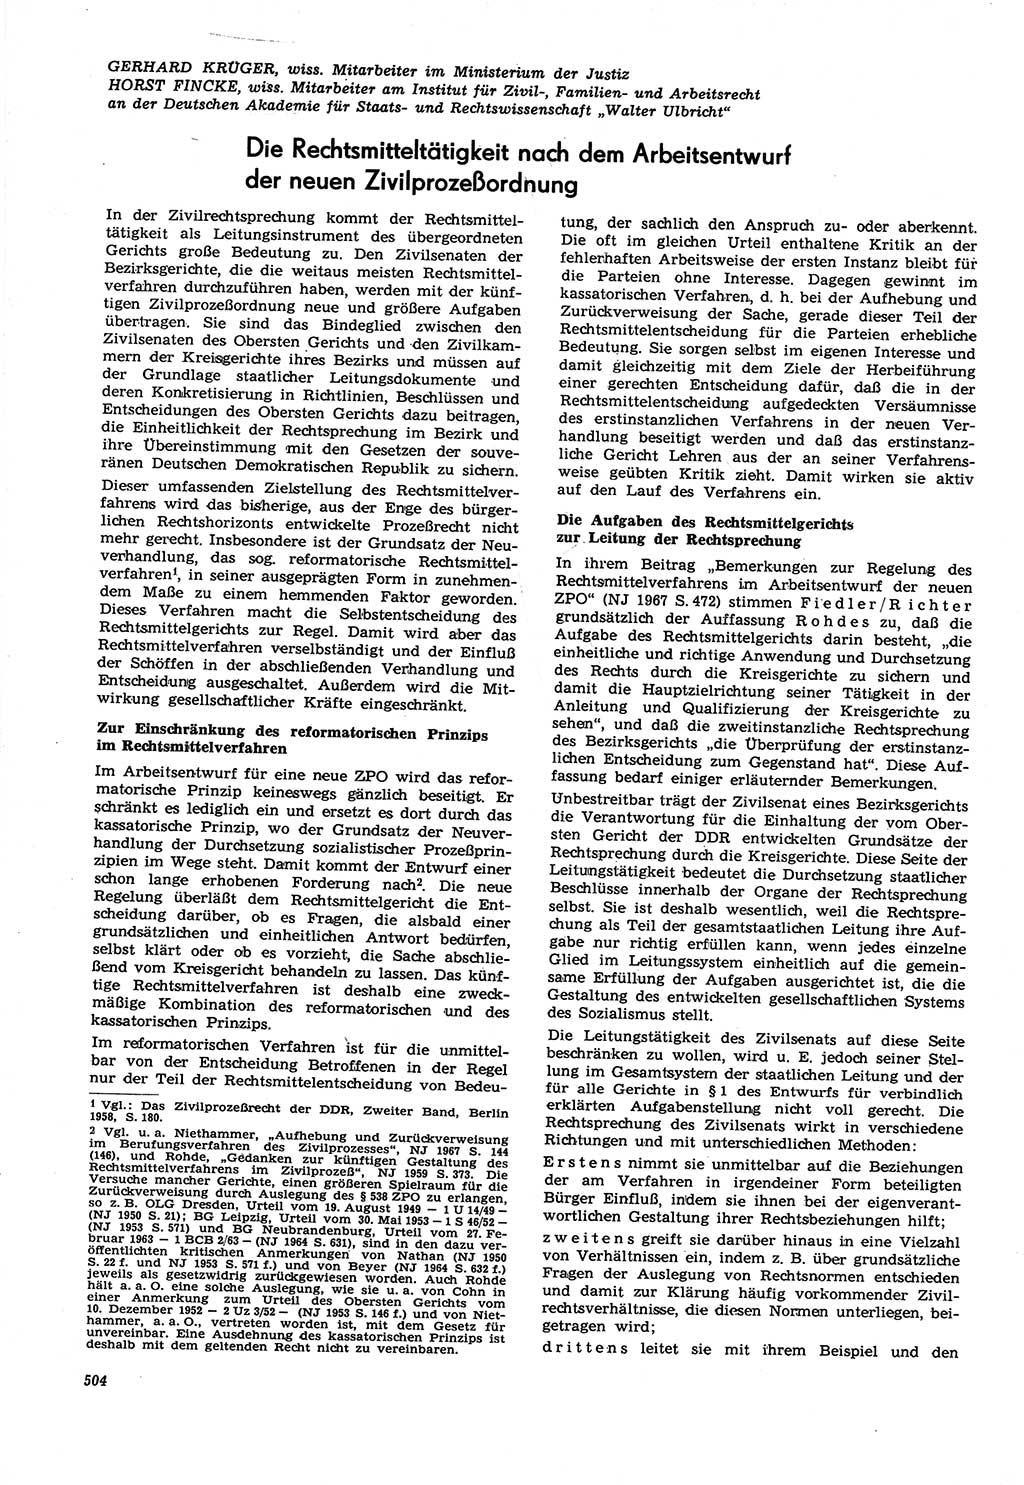 Neue Justiz (NJ), Zeitschrift für Recht und Rechtswissenschaft [Deutsche Demokratische Republik (DDR)], 21. Jahrgang 1967, Seite 504 (NJ DDR 1967, S. 504)